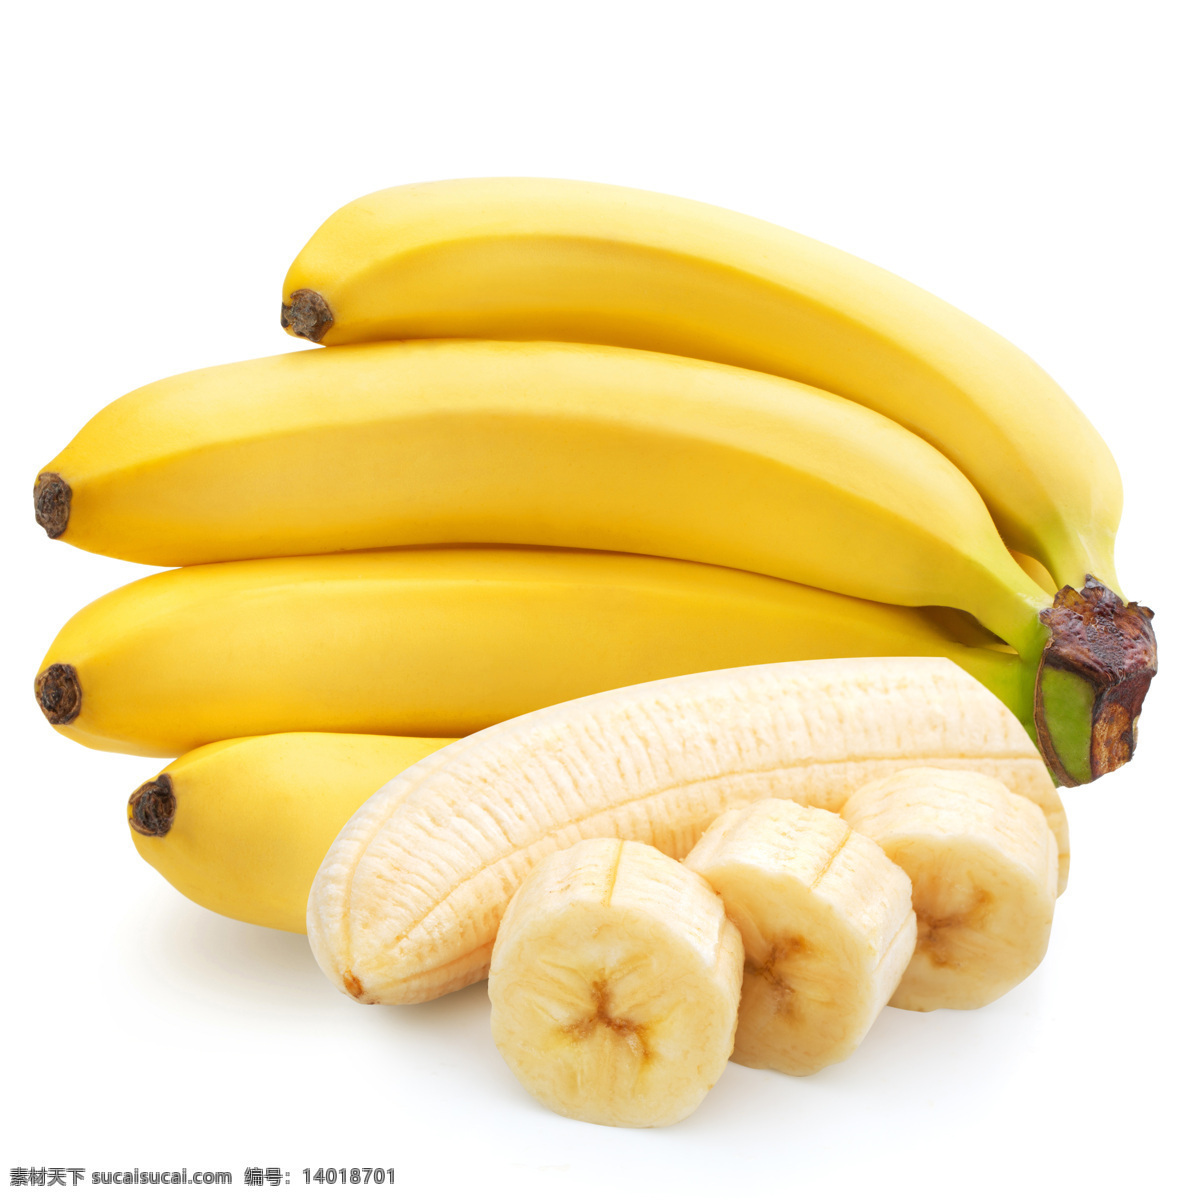 高清香蕉摄影 香蕉 香蕉背景 香蕉摄影 水果 水果摄影 新鲜水果 水果广告 食物 水果蔬菜 餐饮美食 白色